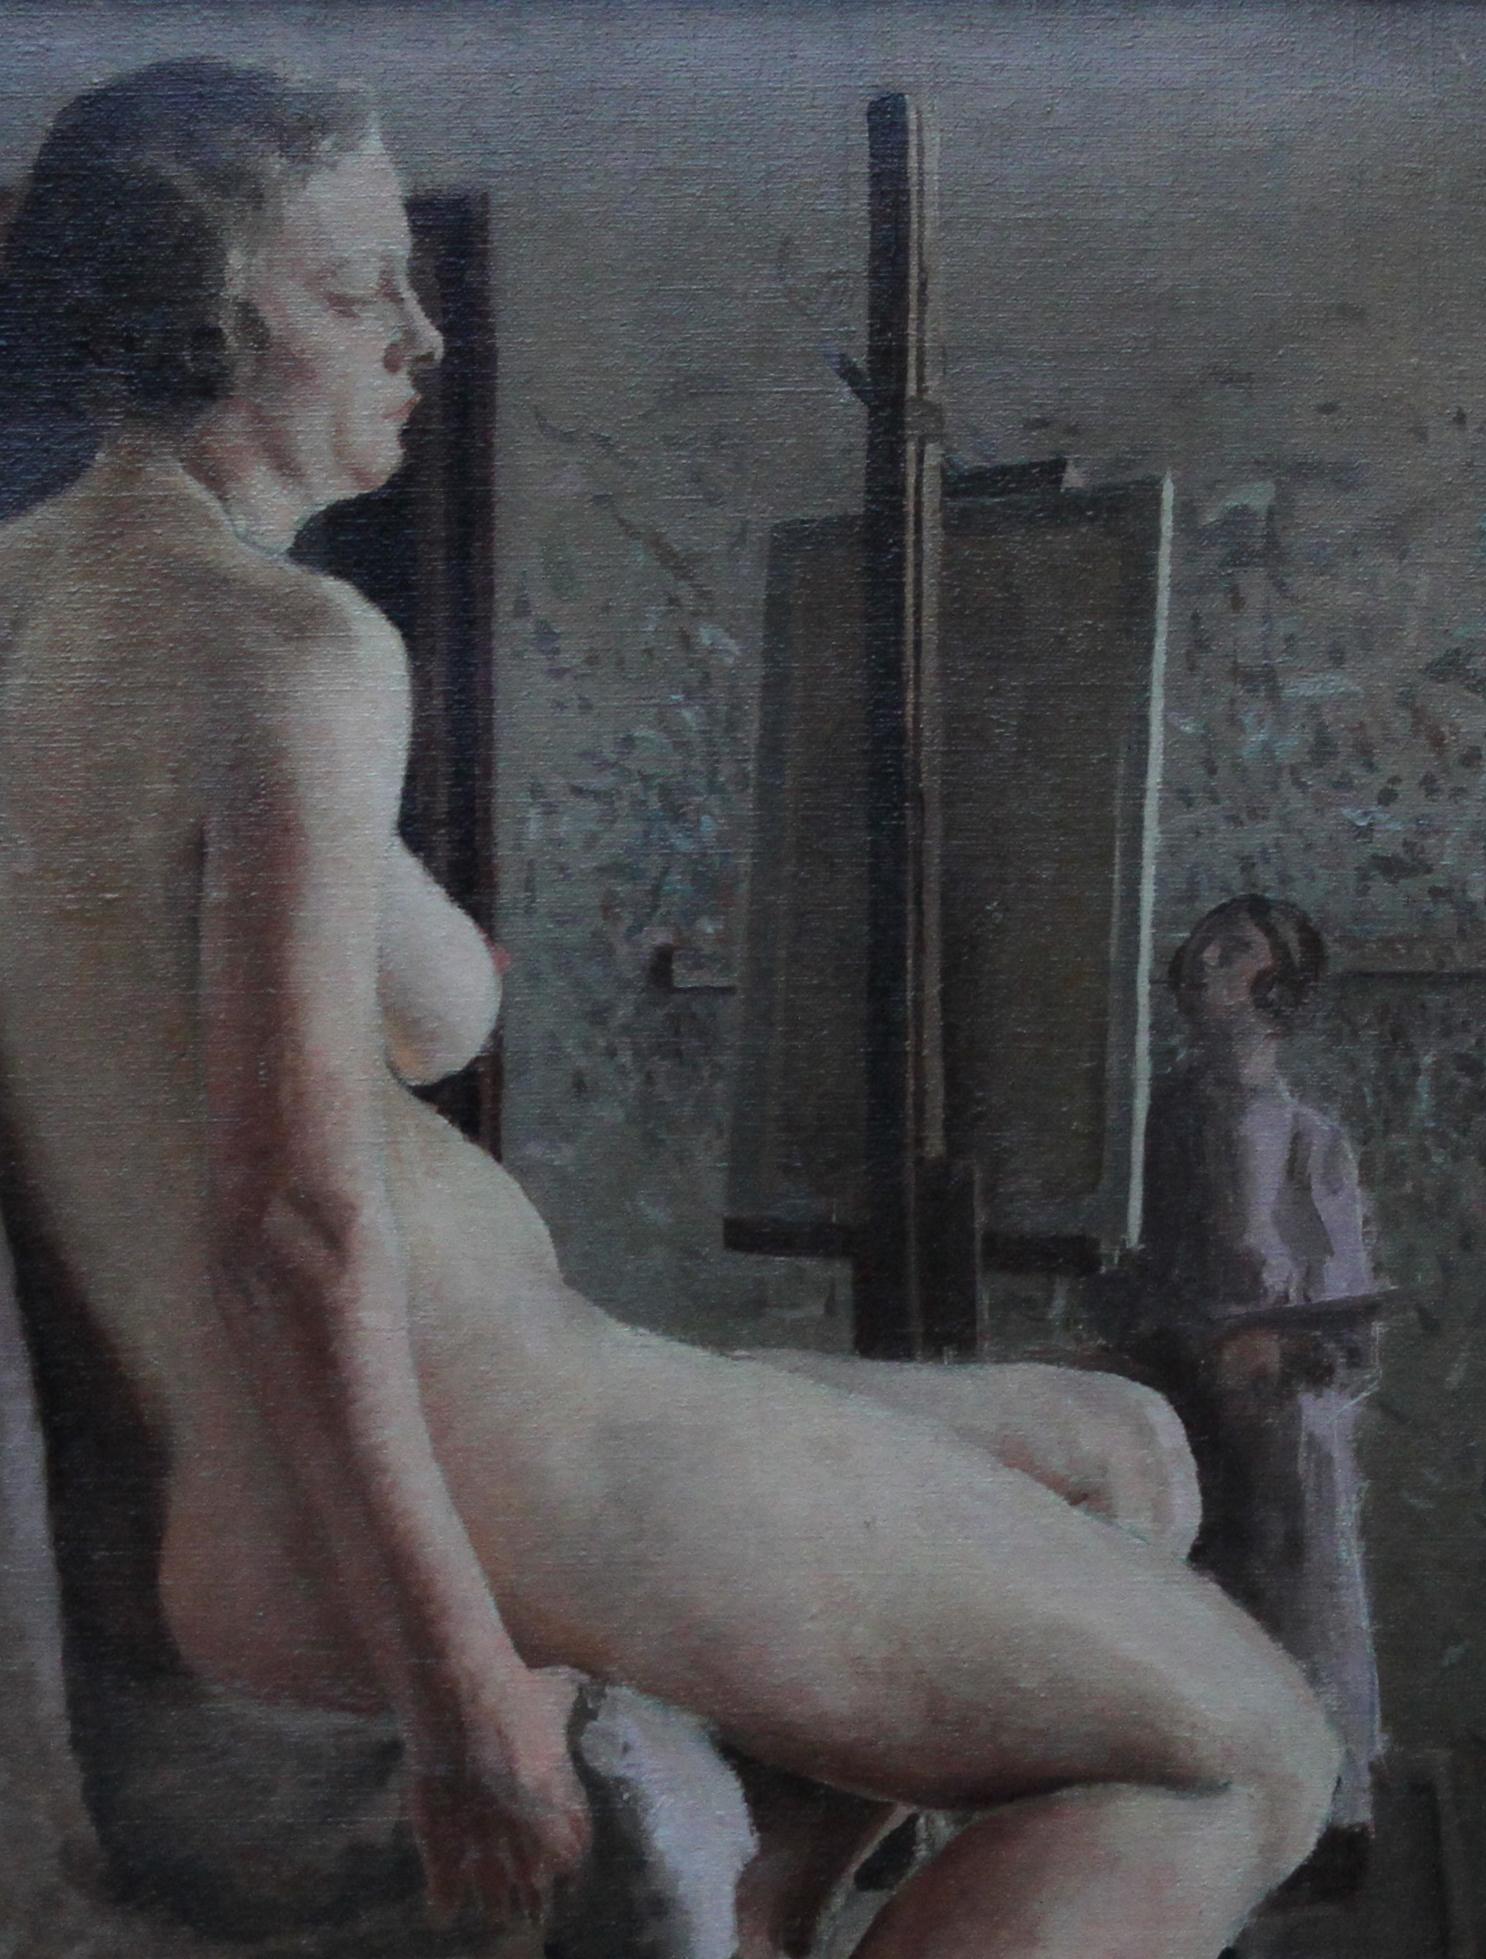 Diese hervorragende Post Impressionist Slade School weiblichen in voller Länge sitzend nackt Porträt Ölgemälde ist von weiblichen Künstler E A Jay. Das Bild wurde in den 1940er Jahren gemalt und zeigt eine Künstlerin an ihrer Staffelei, während die